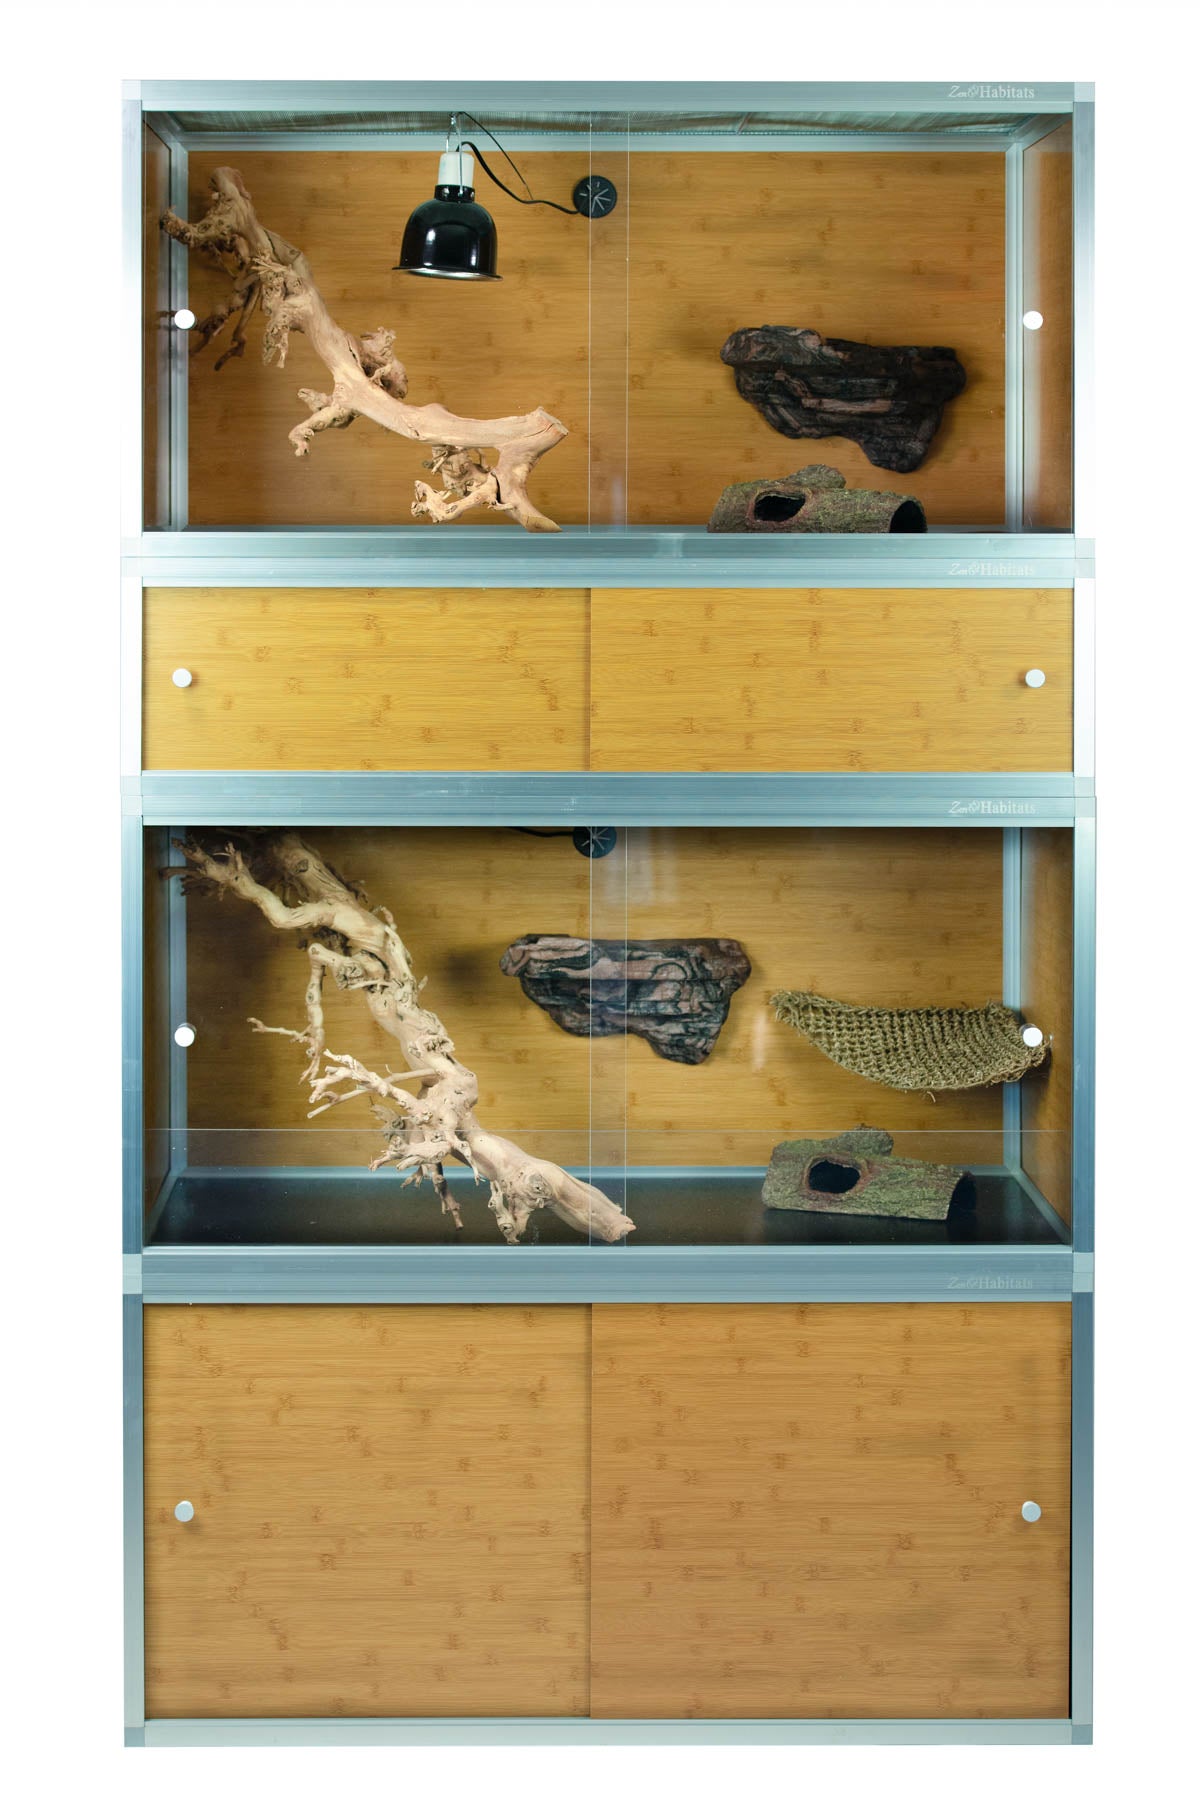 4'x2'x2' PVC Panel Reptile Enclosure by Zen Habitats - Zen Habitats Canada